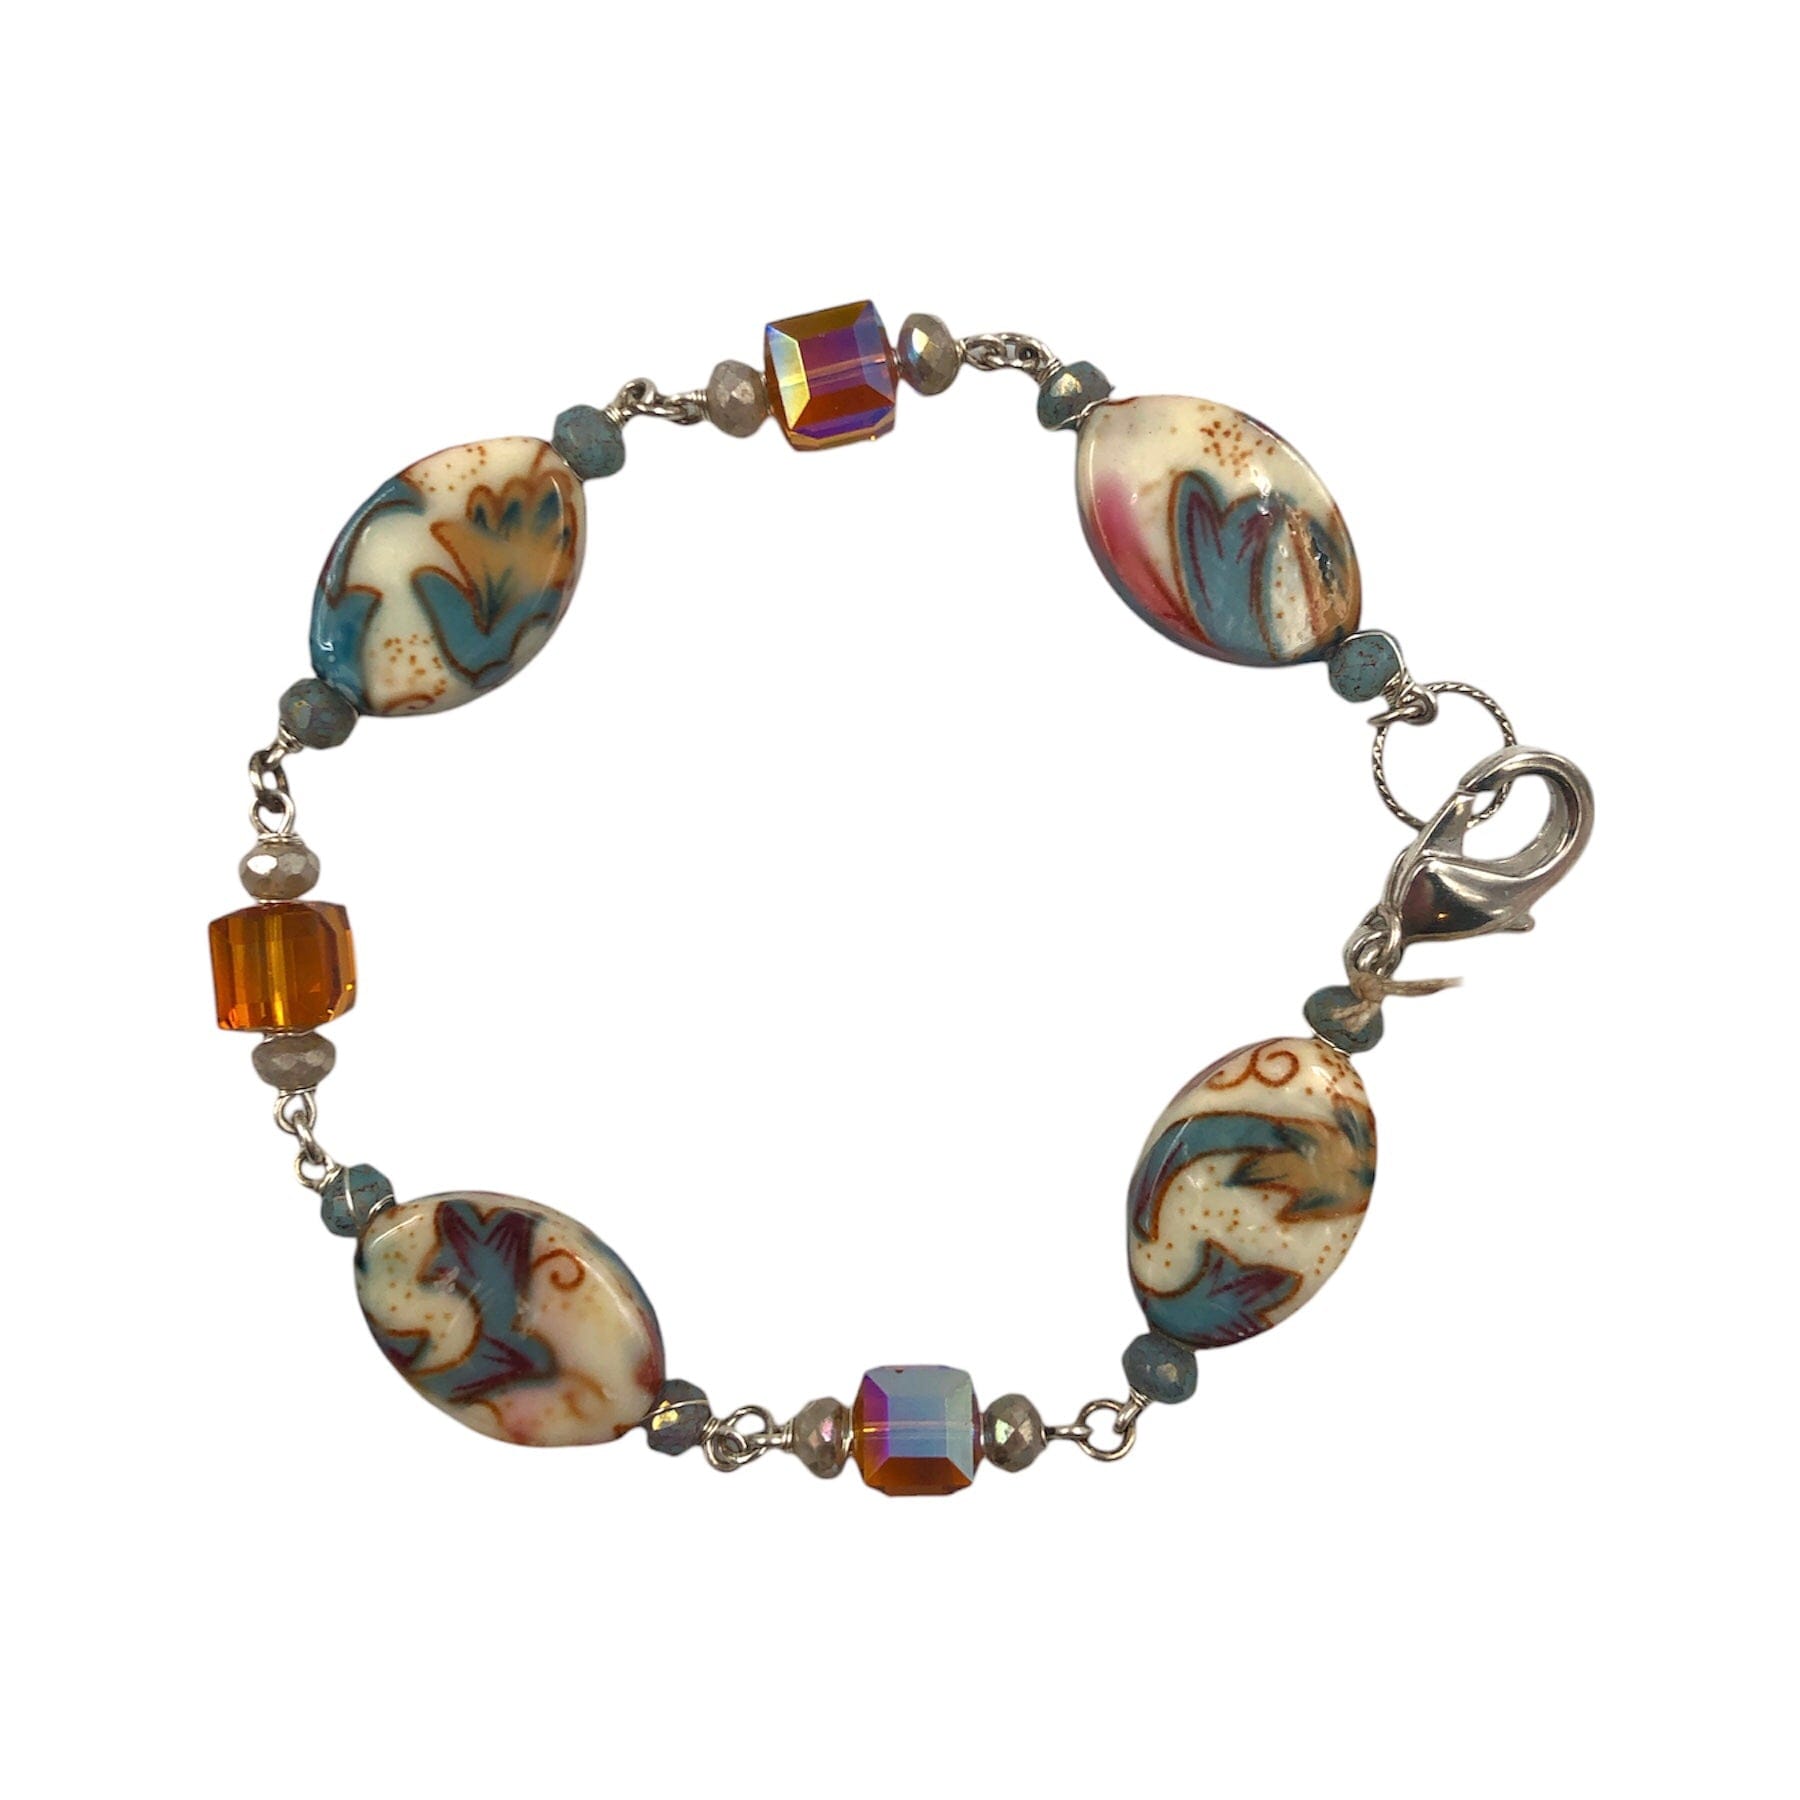 Bracelet with Swarovski Crystal Beads, Czech Glass Beads, Acrylic Beads